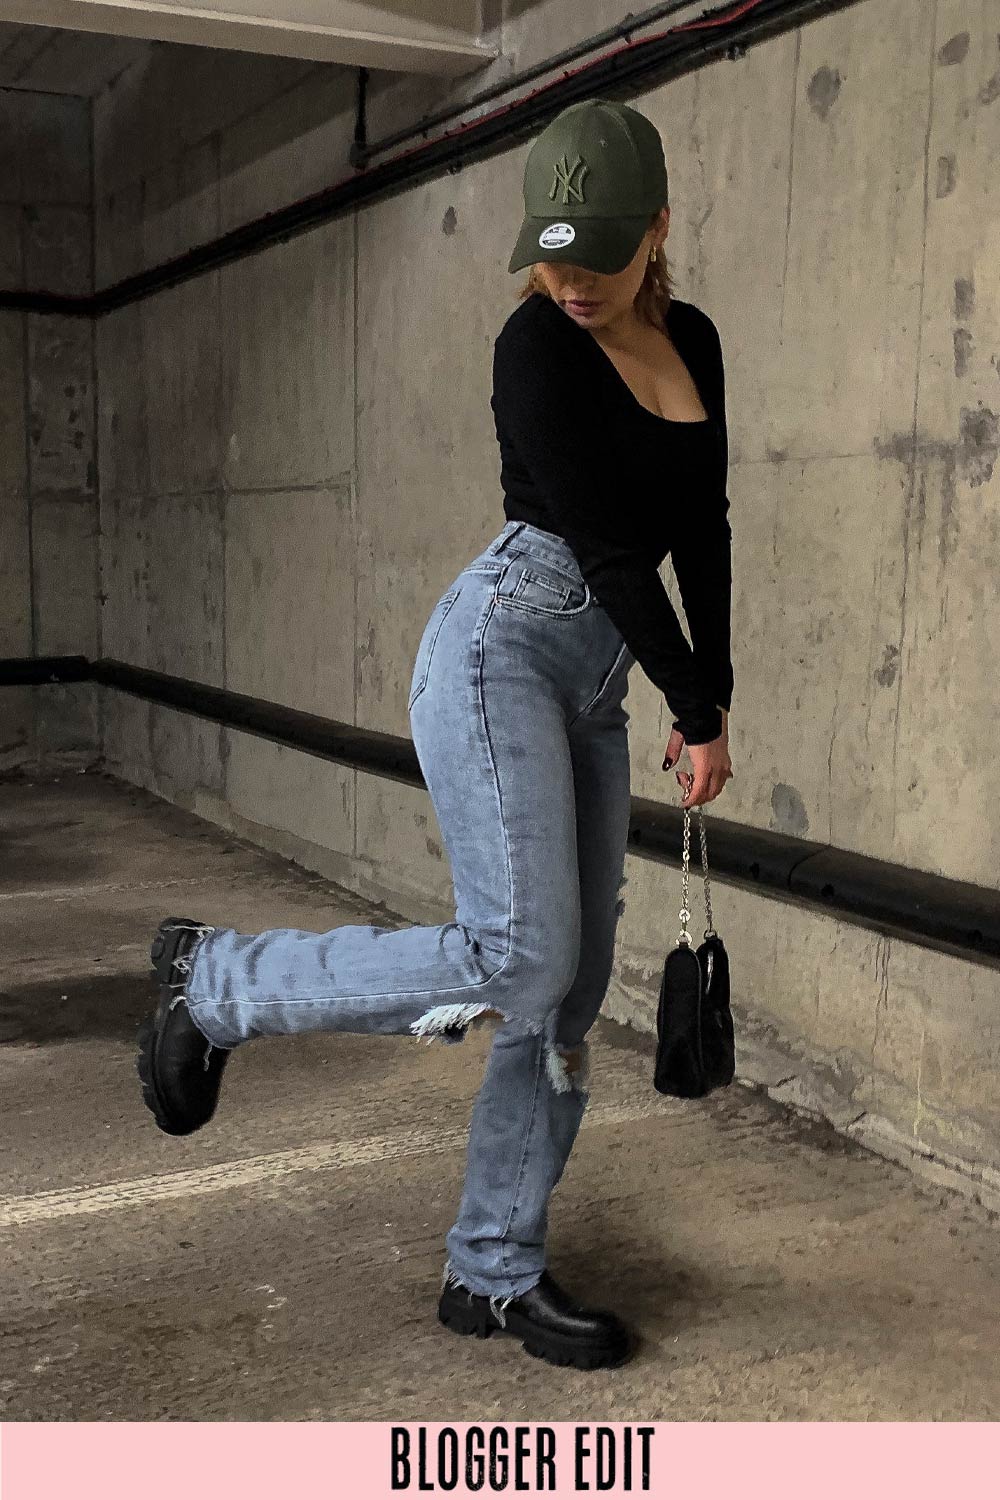 Chelsea Blue '90s Full Length Jeans